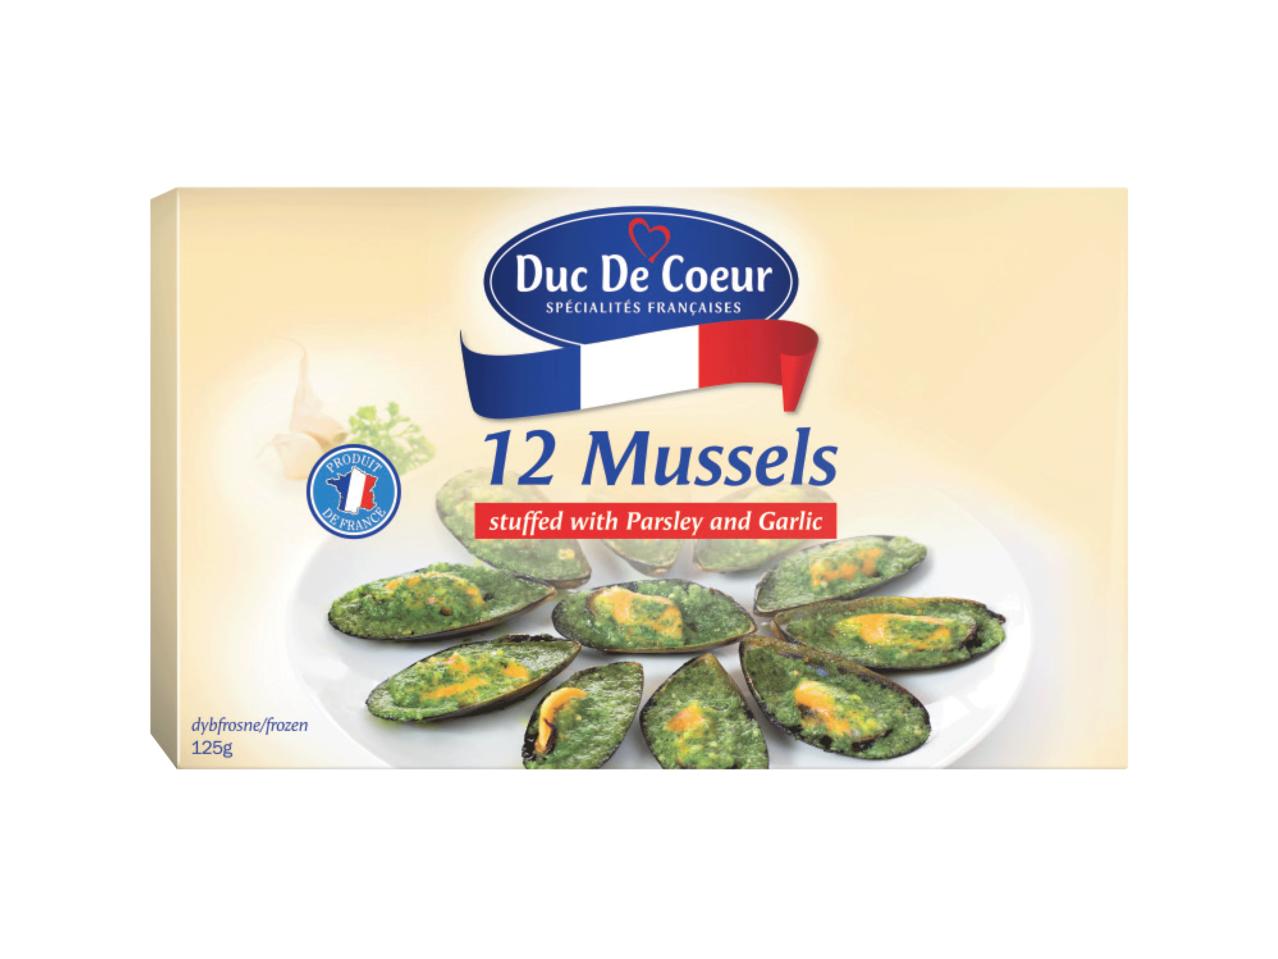 DUC DE COEUR 12 Mussels